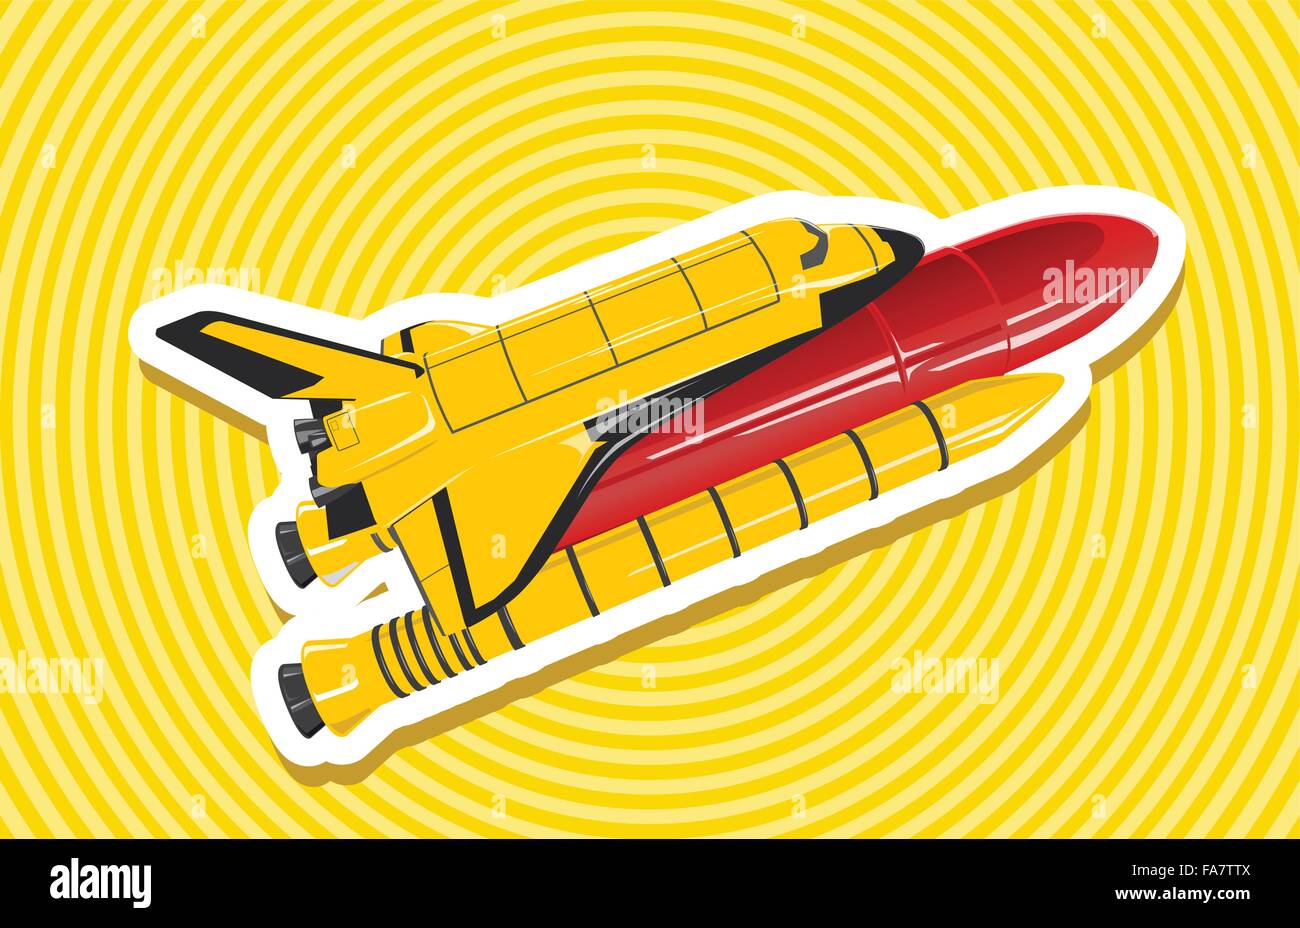 Gelb golden Space Shuttles auf gelben Dartscheibe schön flighting Raumschiff-Tank - glätten isolierte Abbildung Meister Vektor Stock Vektor